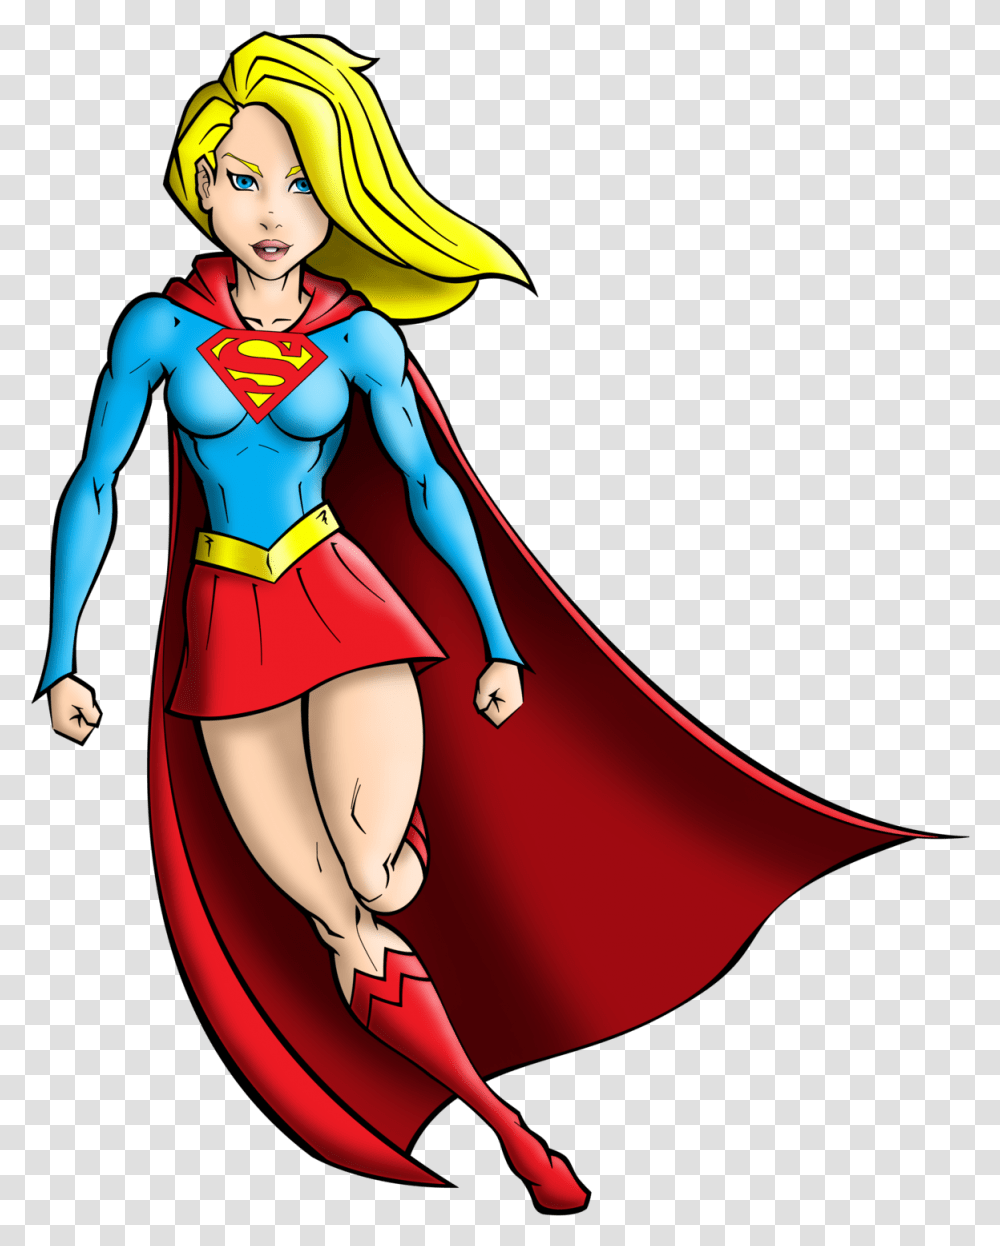 Supergirl Color By Jest84 Supergirl Color By Jest84 Cartoon Supergirl Clipart, Costume, Apparel, Comics Transparent Png